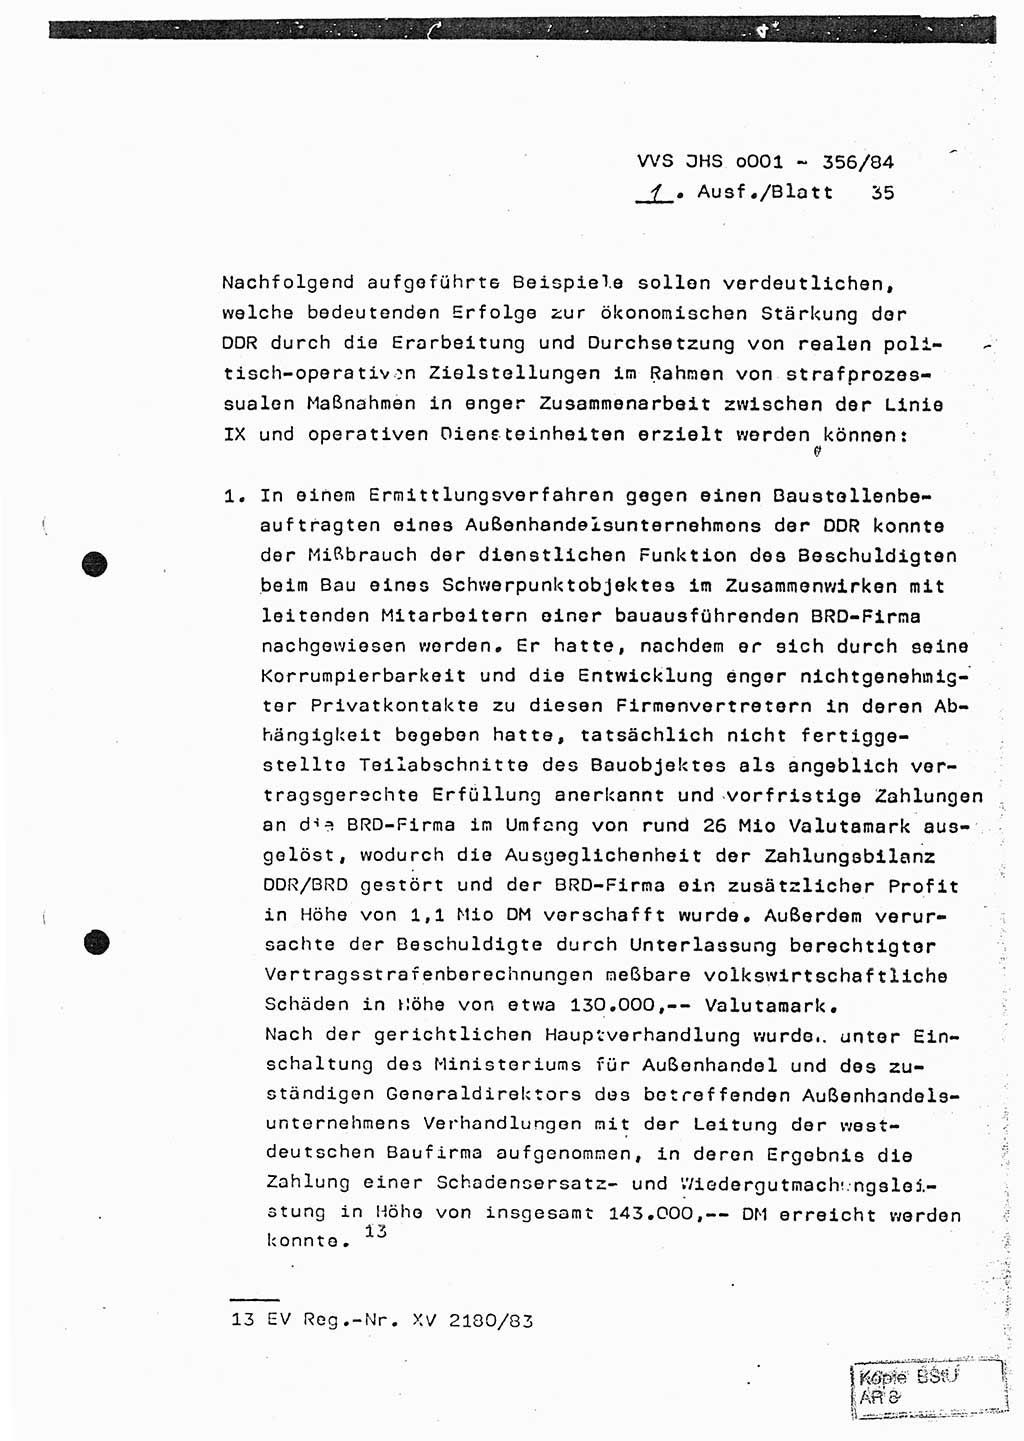 Diplomarbeit, Major Lutz Rahaus (HA Ⅸ/3), Ministerium für Staatssicherheit (MfS) [Deutsche Demokratische Republik (DDR)], Juristische Hochschule (JHS), Vertrauliche Verschlußsache (VVS) o001-356/84, Potsdam 1984, Seite 35 (Dipl.-Arb. MfS DDR JHS VVS o001-356/84 1984, S. 35)